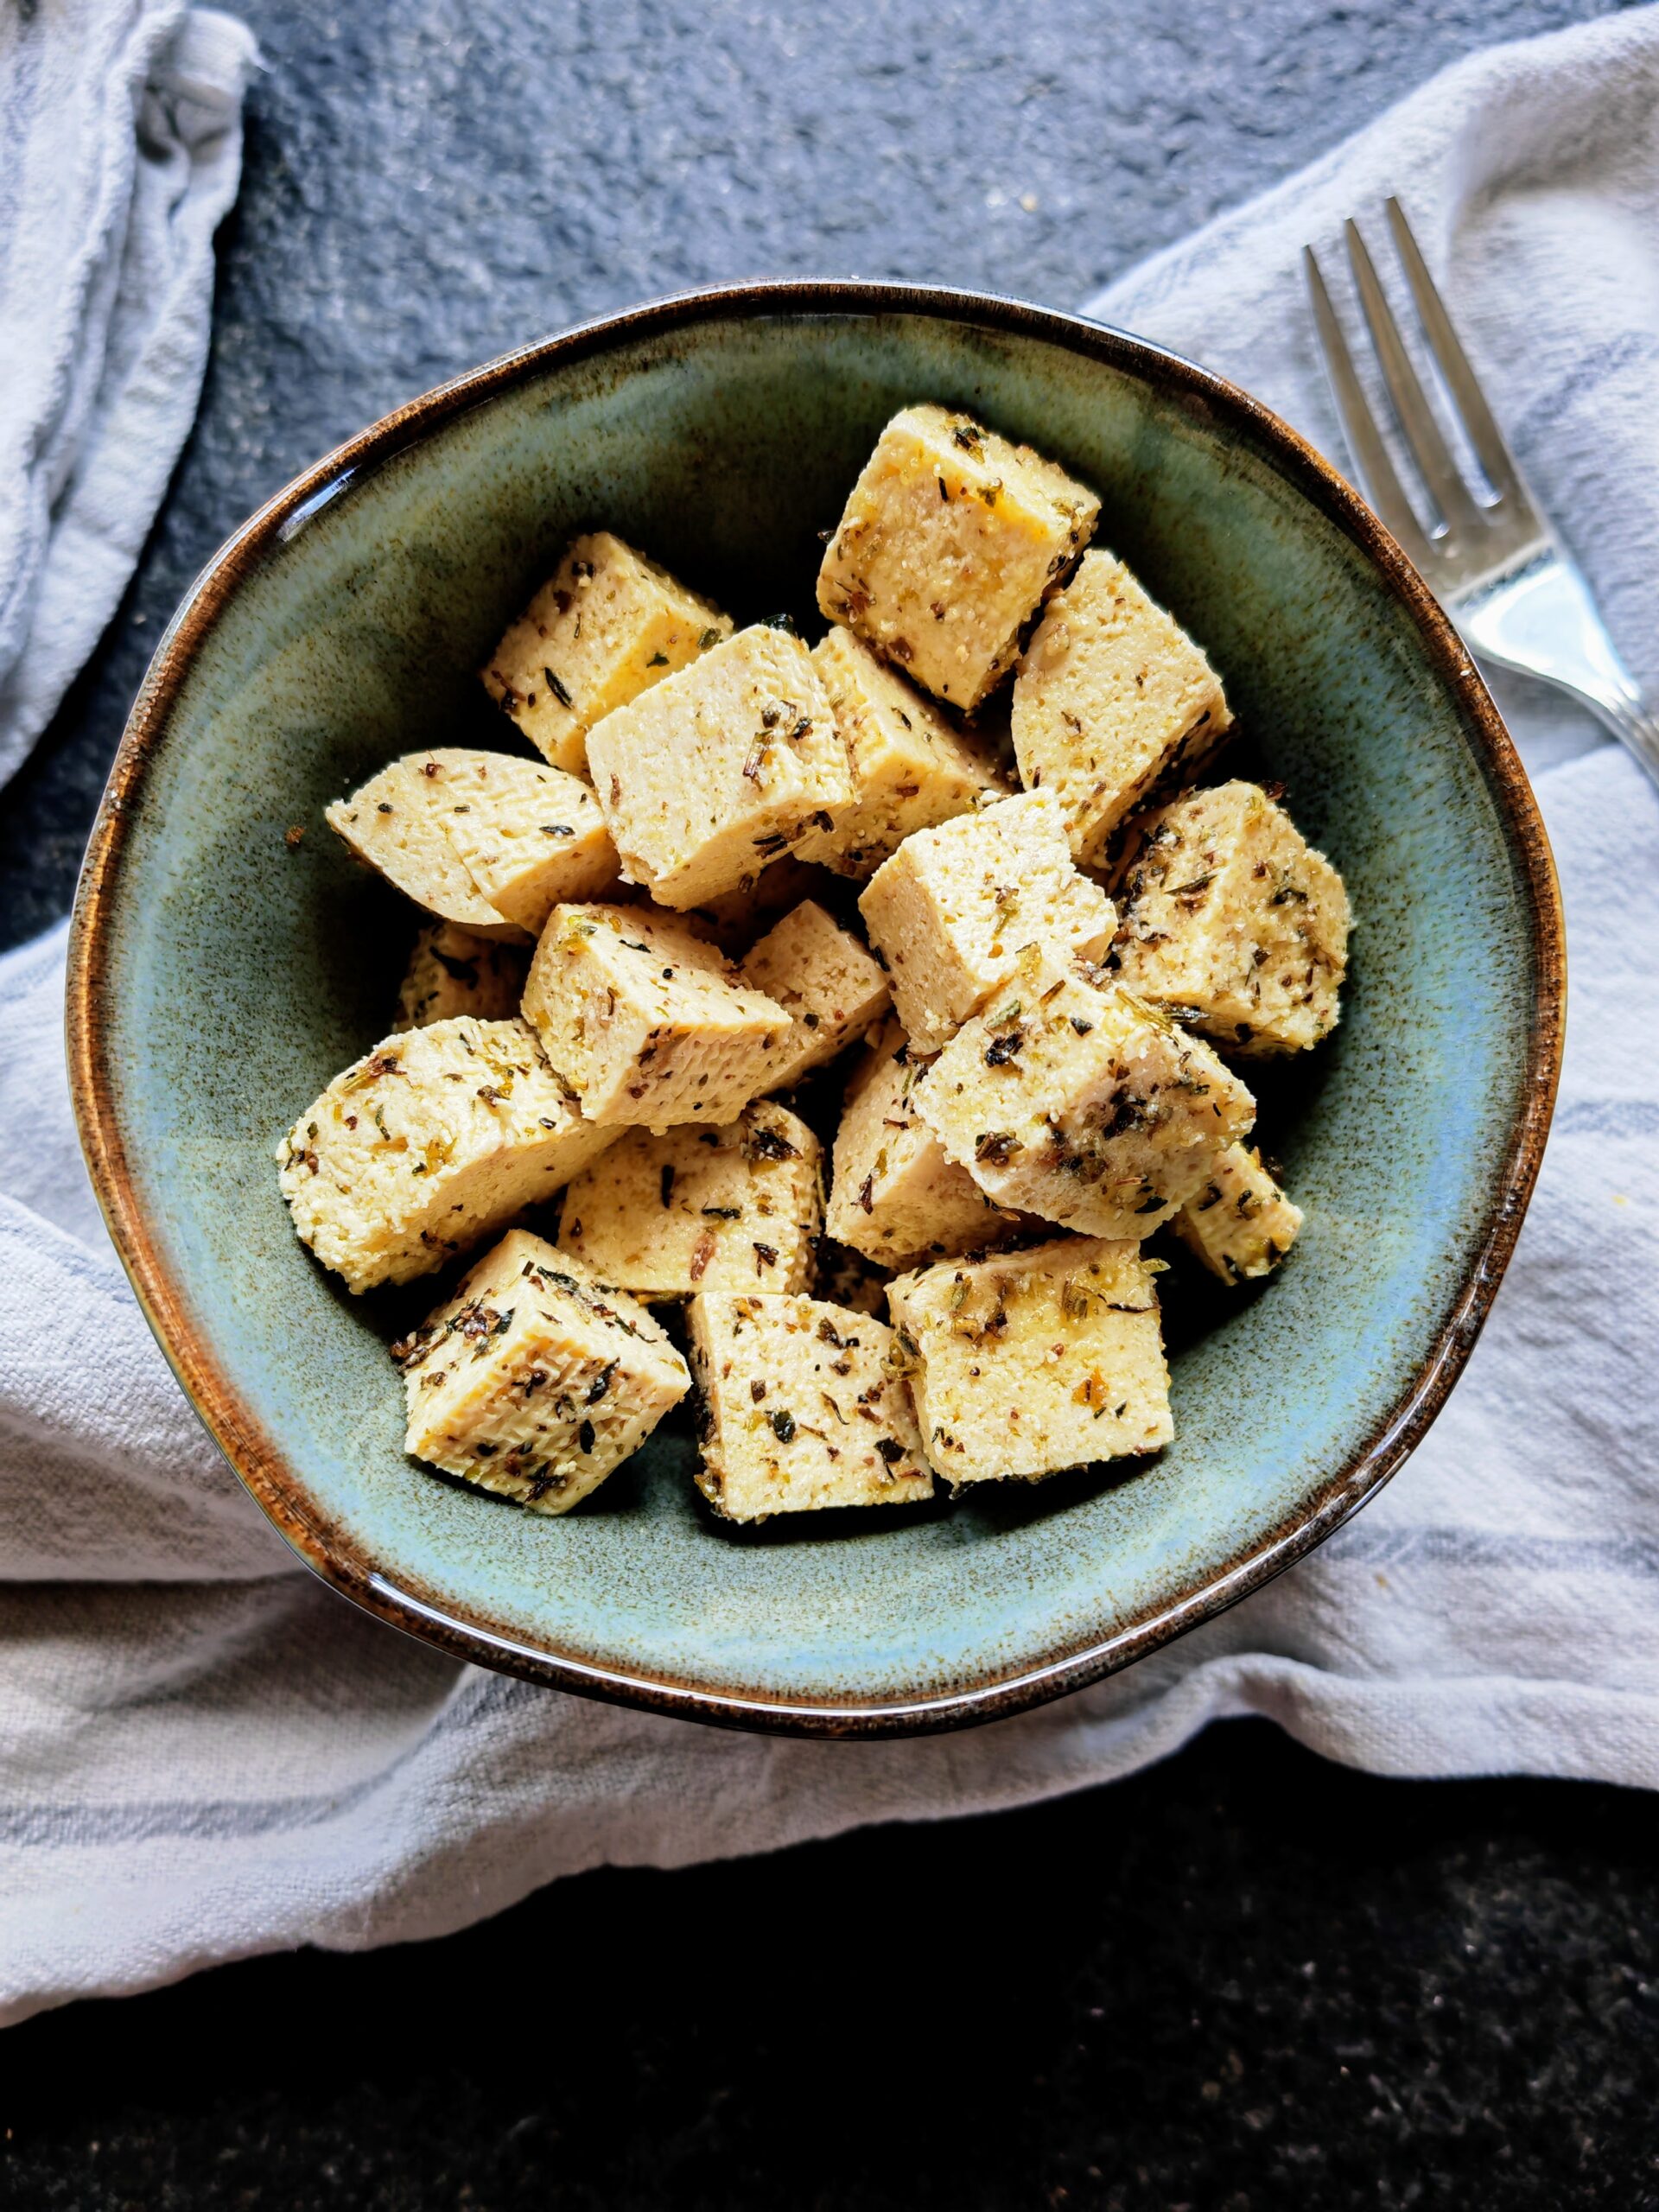 Veganer Feta aus Tofu - so einfach, so lecker! Perfekt für deinen nächsten Salat, ganz ohne tierische Produkte!